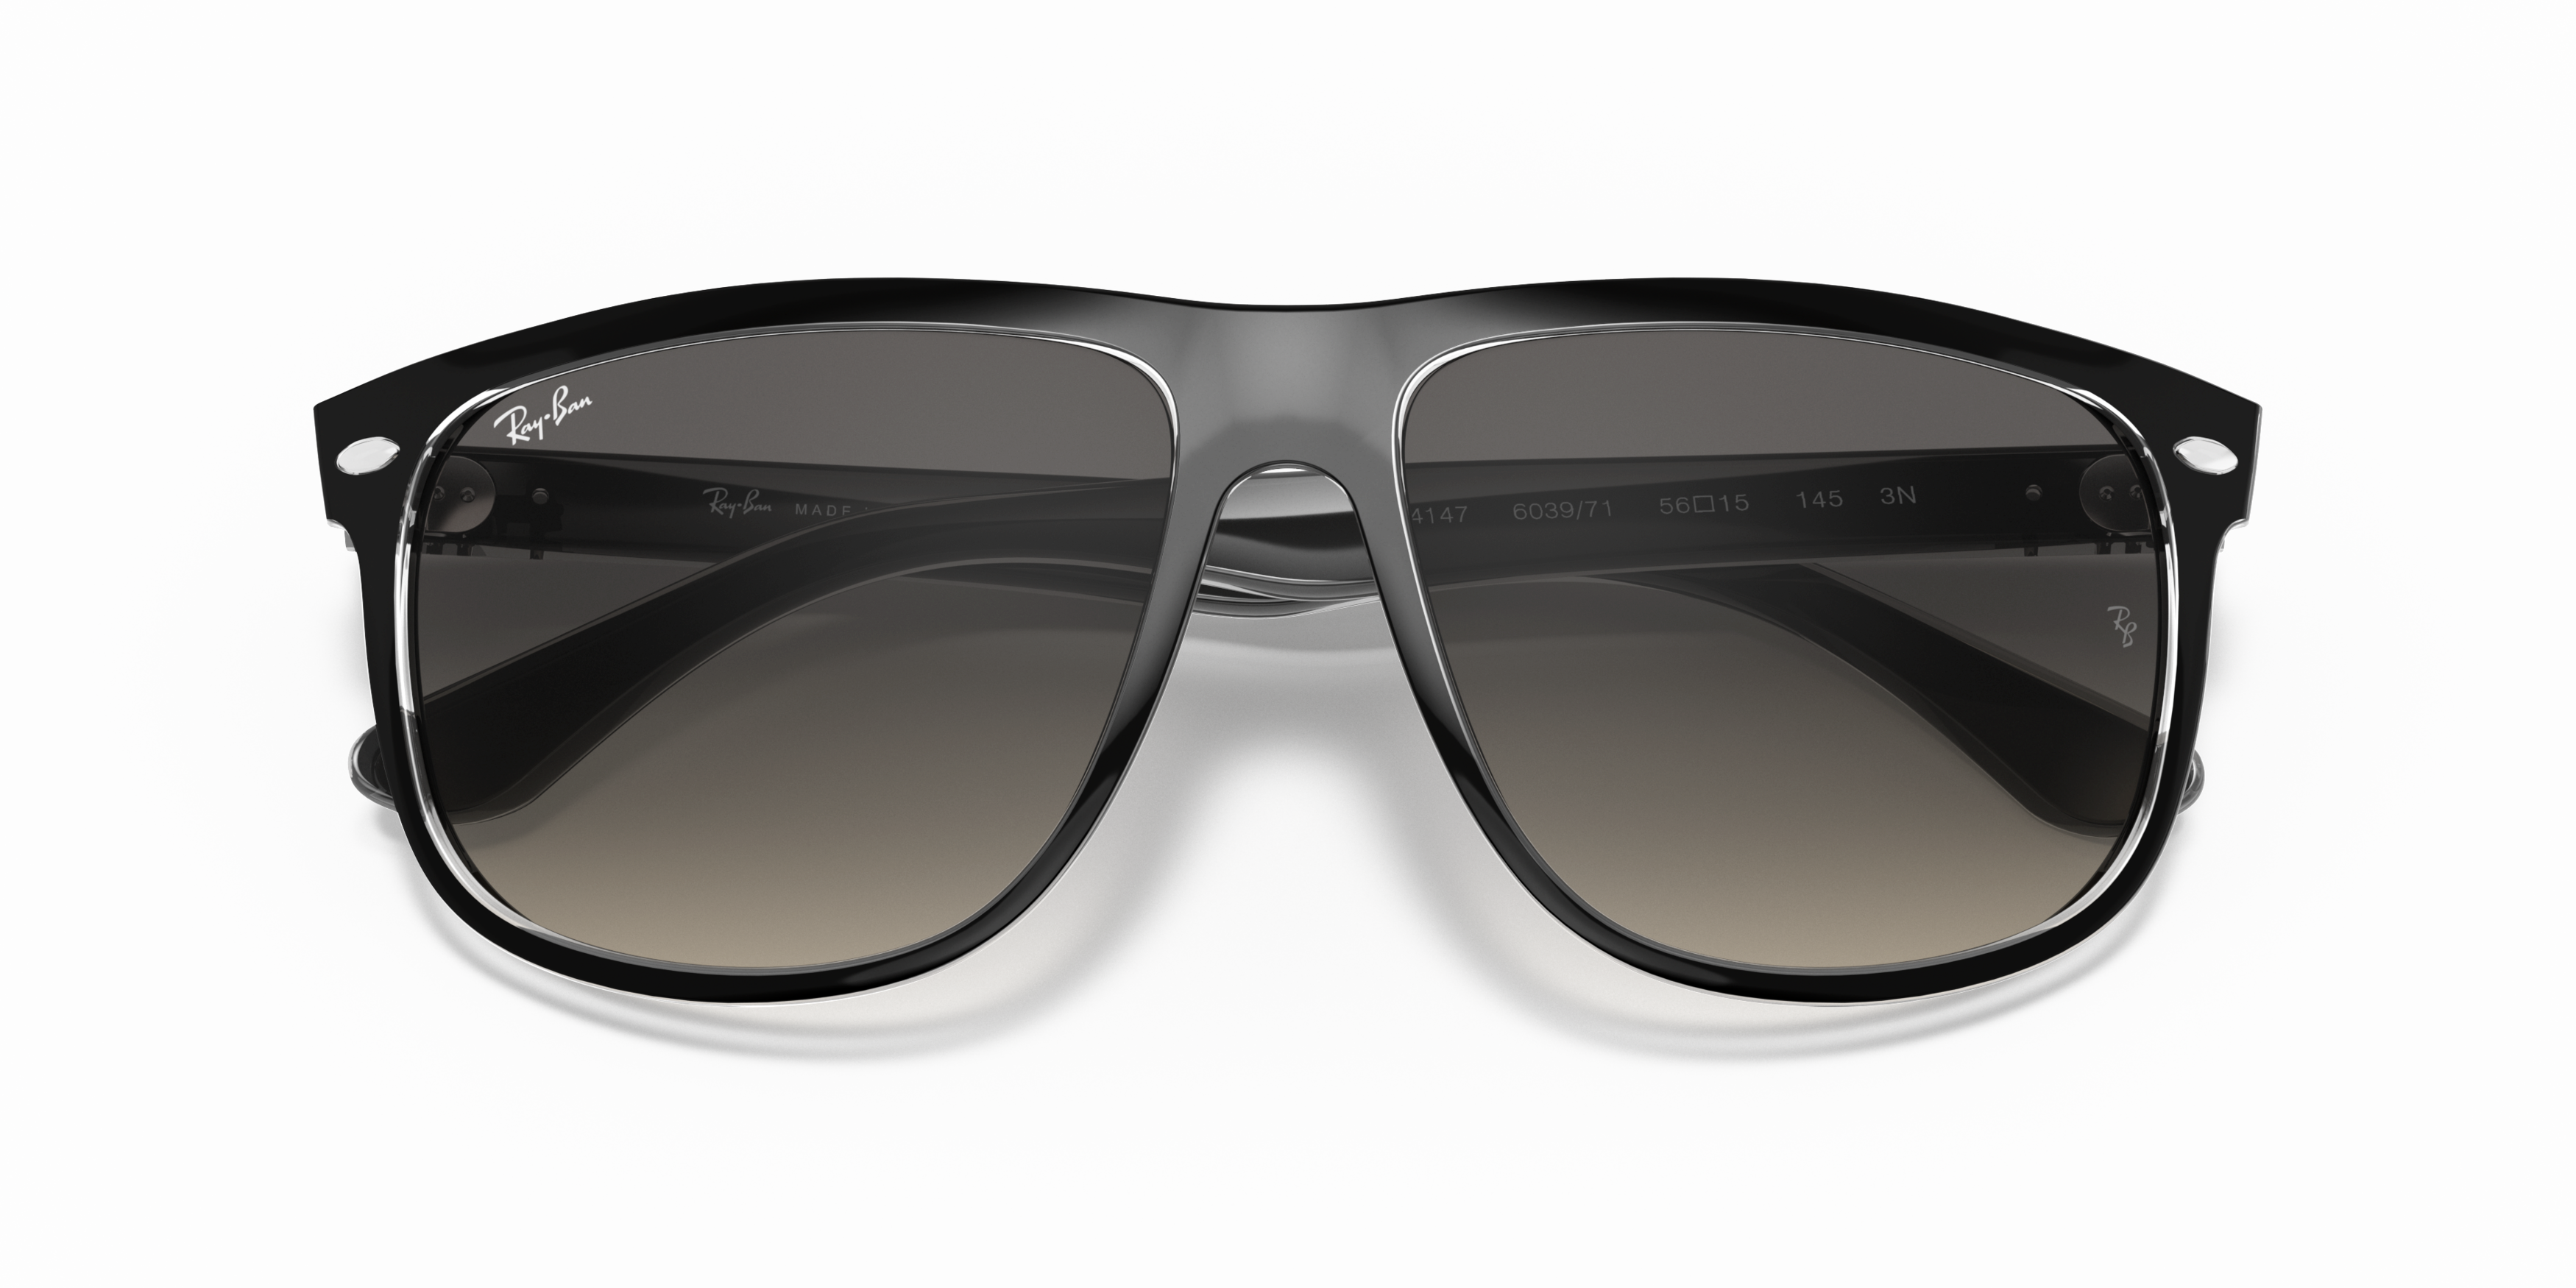 Folded Ray-Ban Boyfriend RB 4147 (603971) Sunglasses Grey / Black